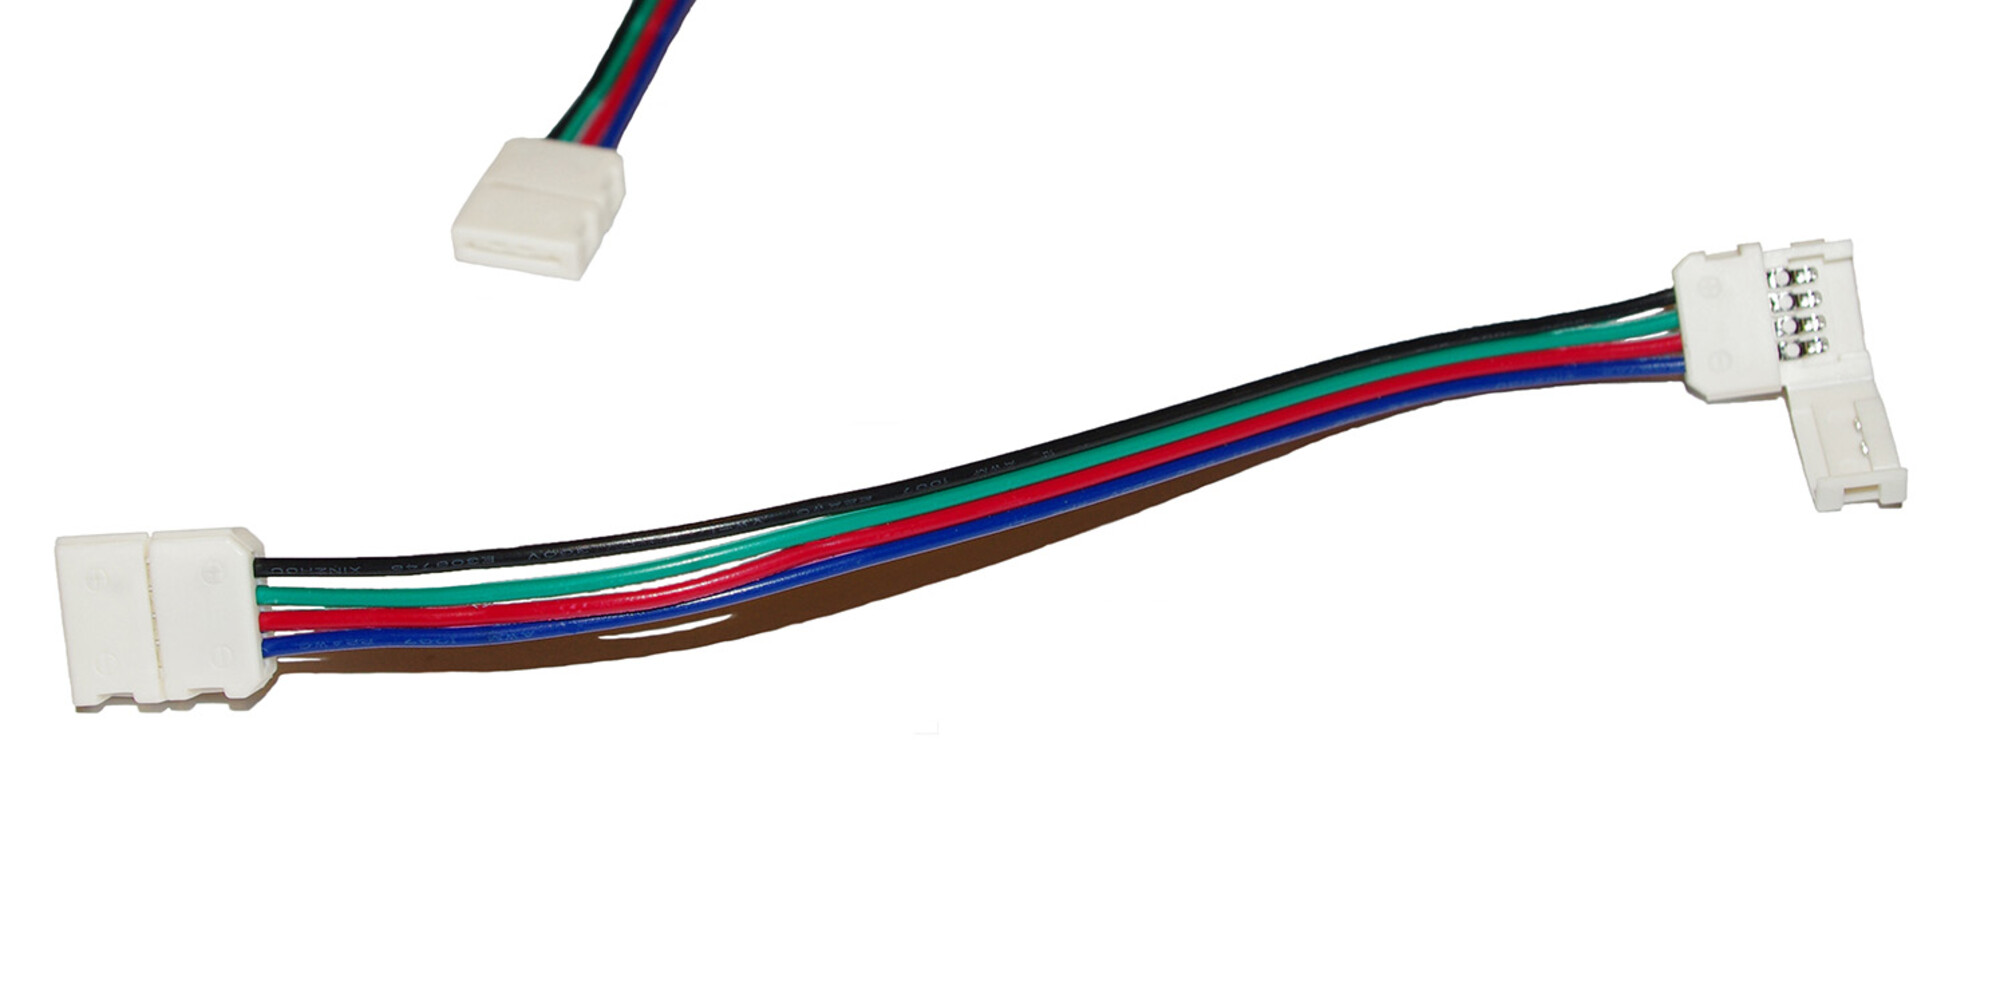 LED Universum LED Streifen Kabel, Klippbefestigung, 30cm 4 pol Kabel mit Schnellverbinder für RGB LED Streifen